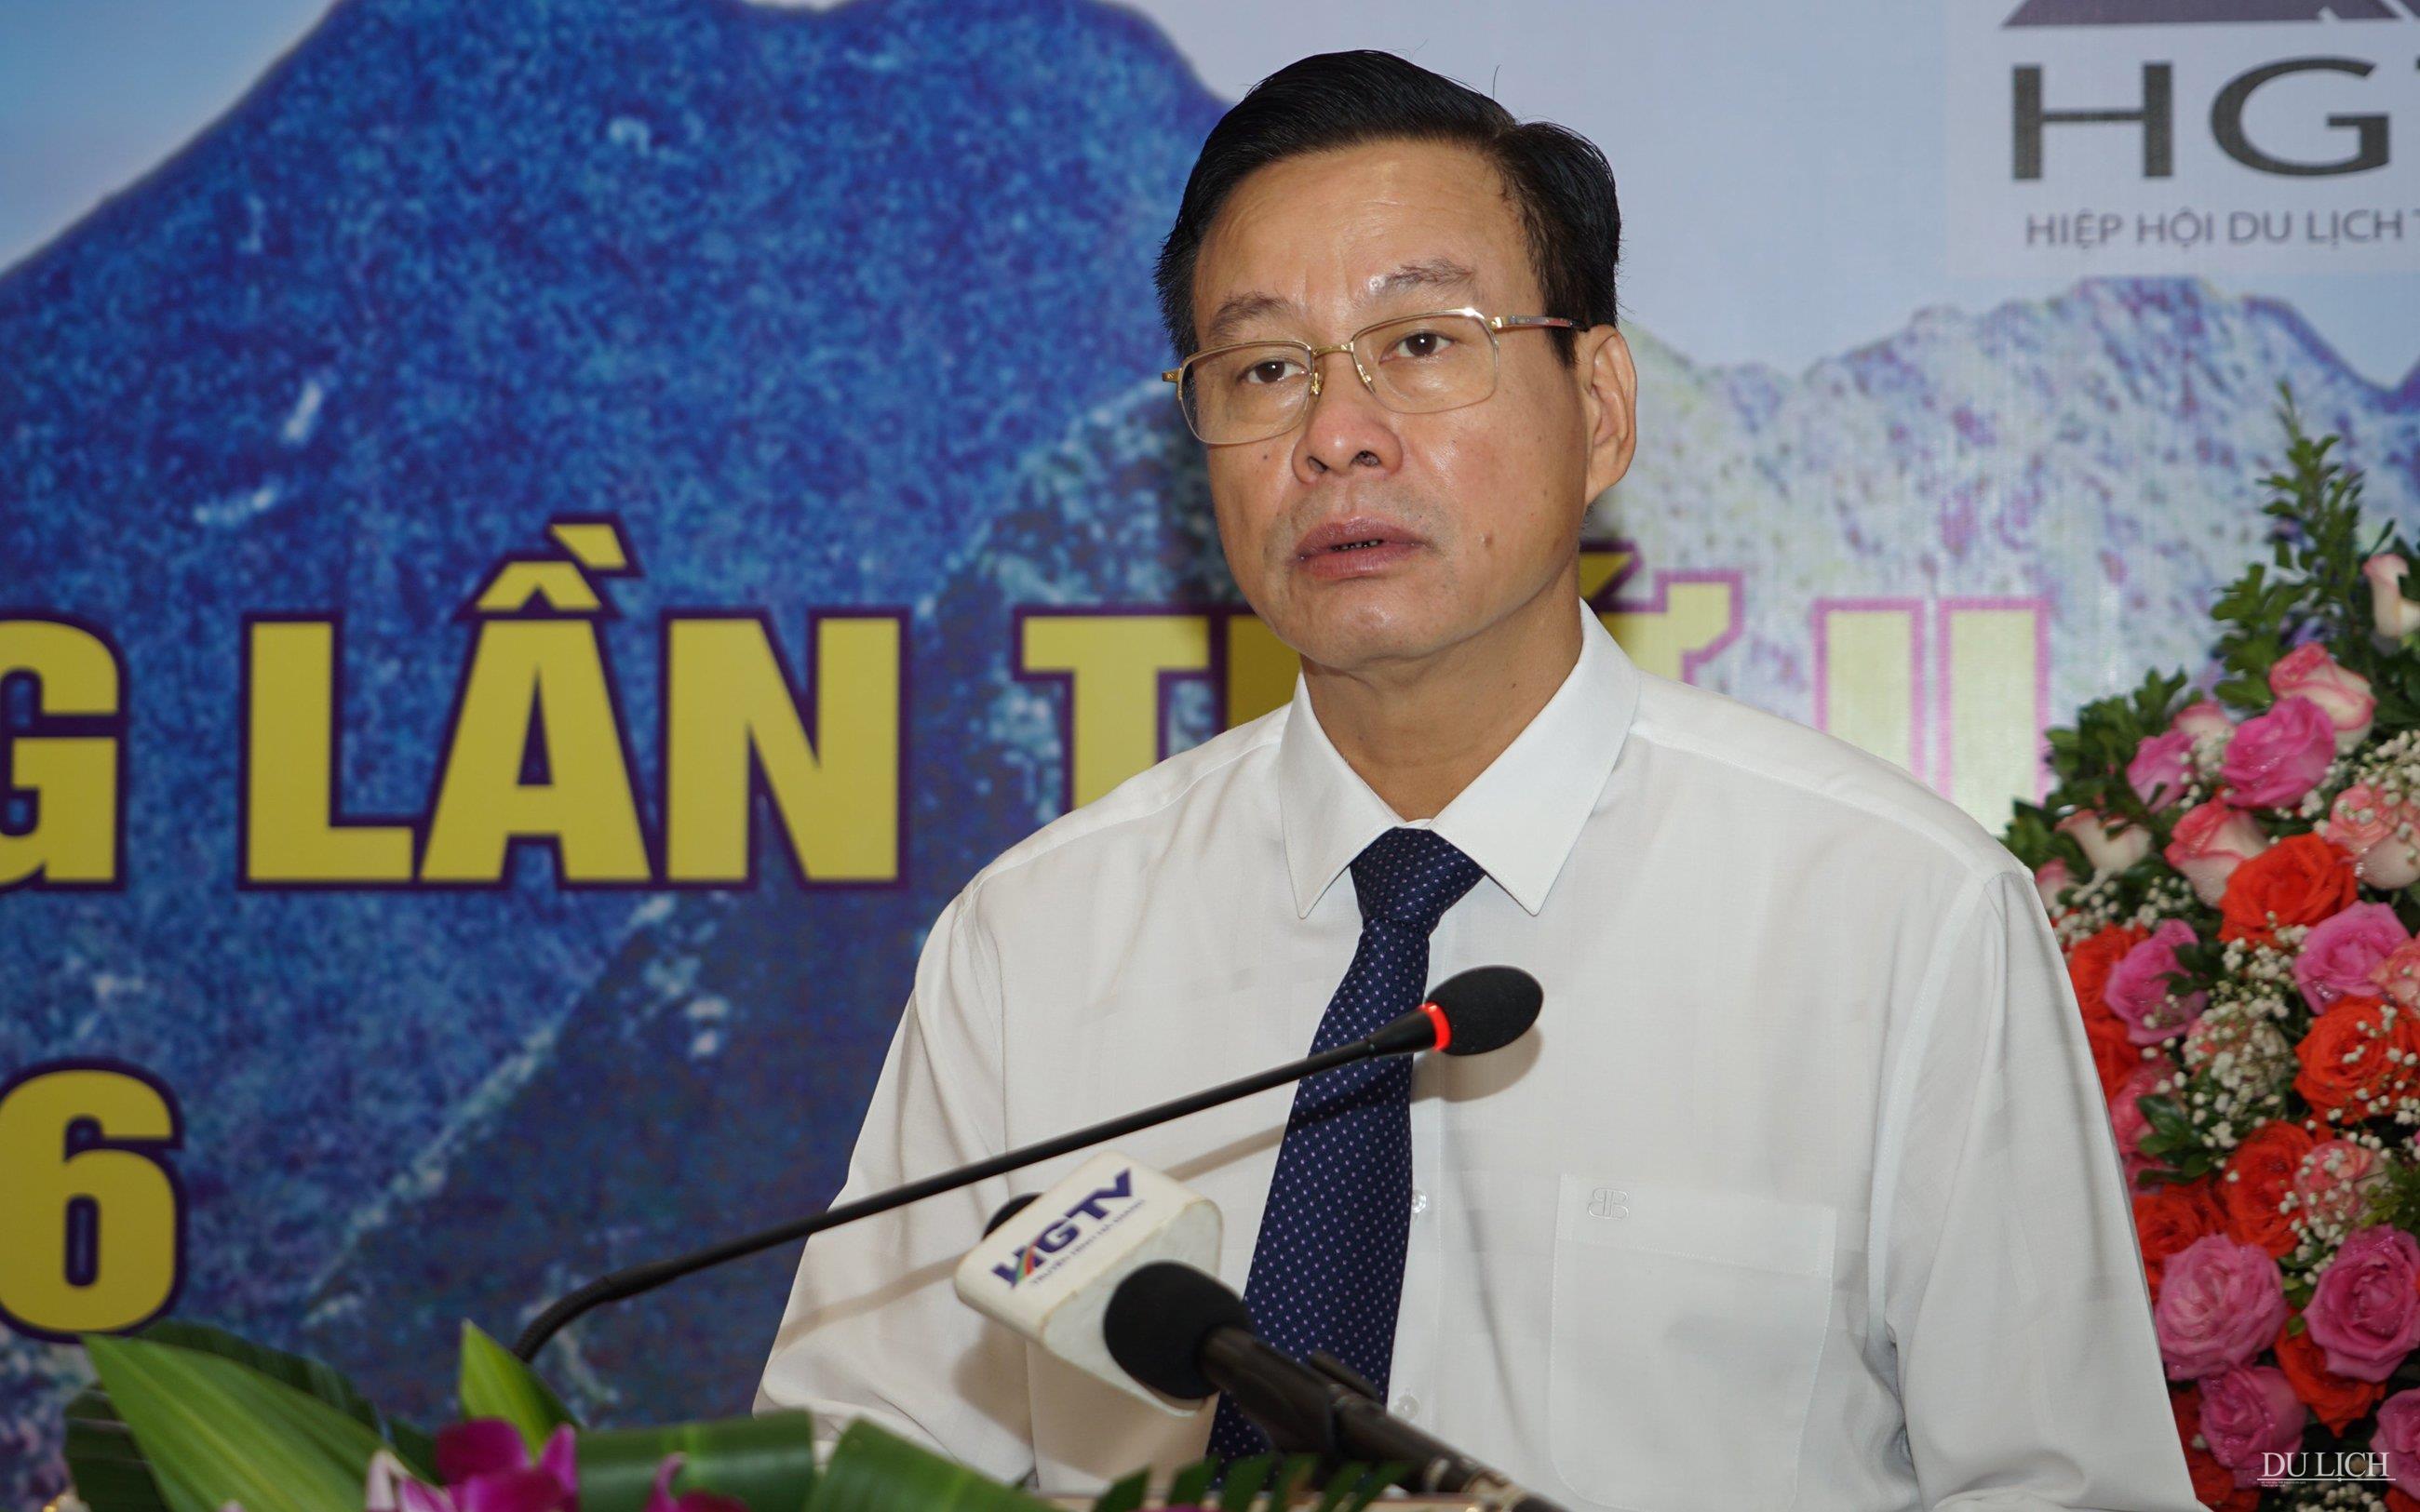 Chủ tịch danh dự Hiệp hội Du lịch Hà Giang Nguyễn Văn Sơn phát biểu